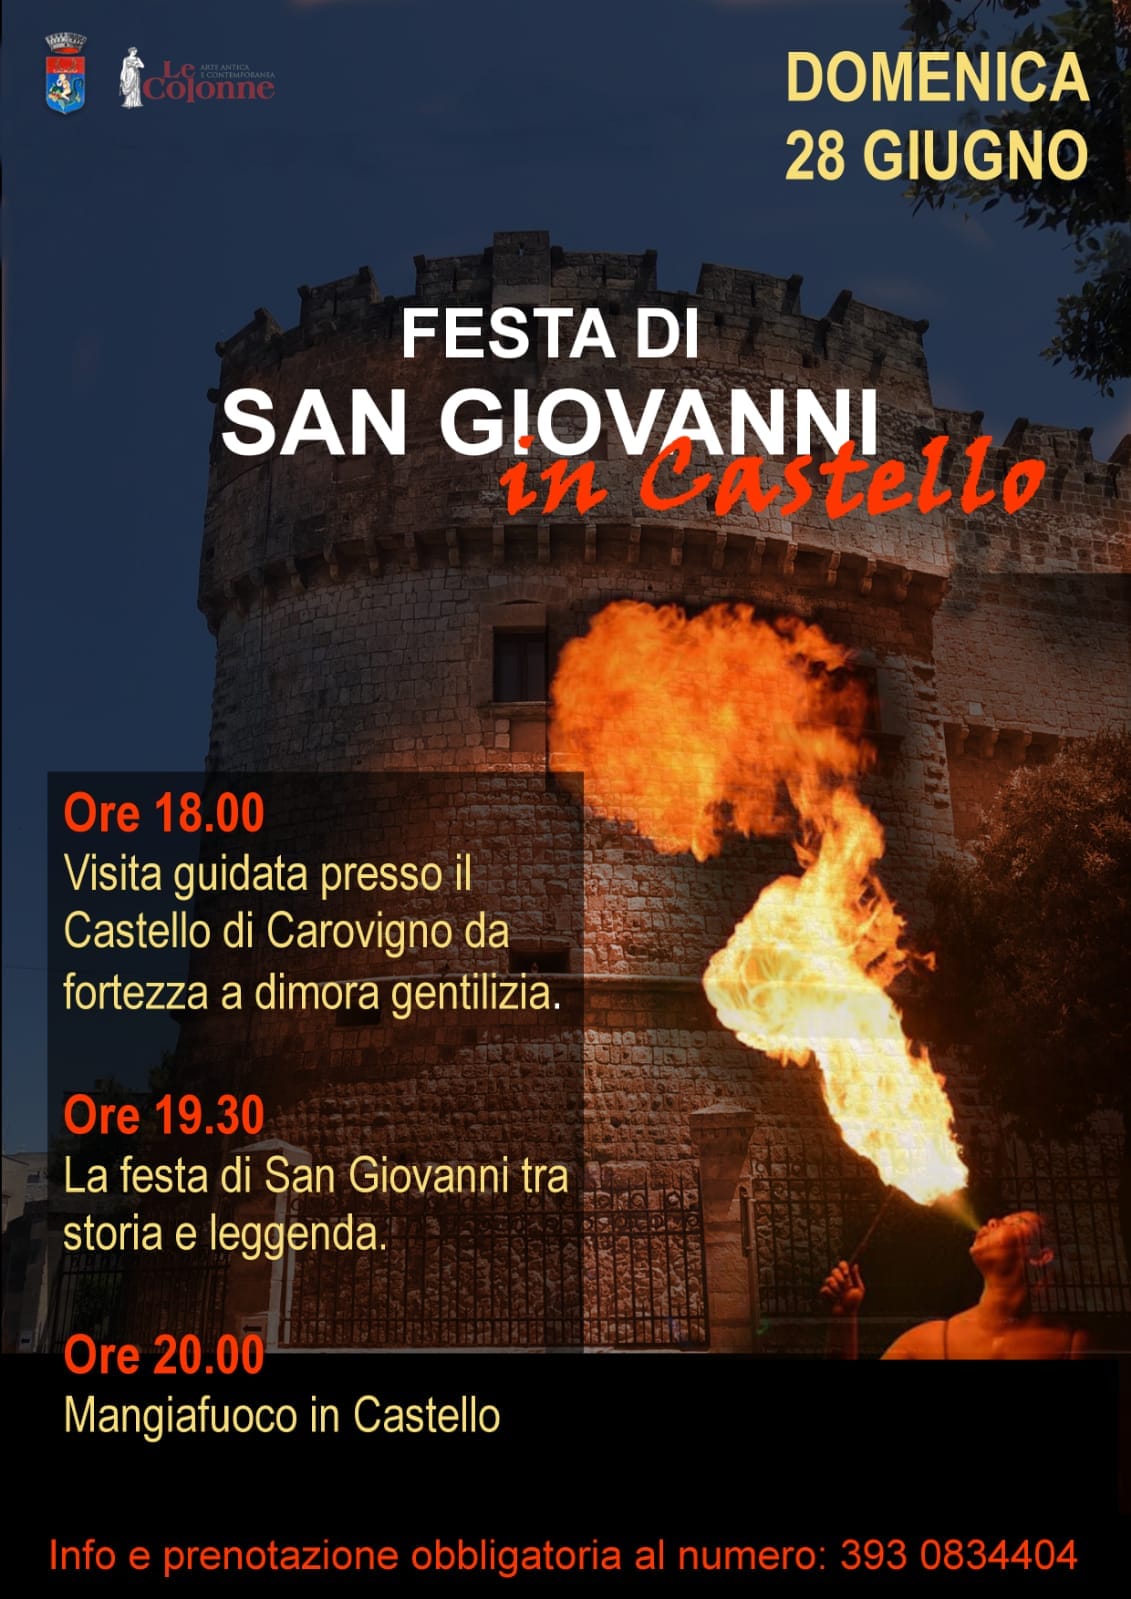 Notte di San Giovanni al Castello, tra visite e spettacoli con il mangiafuoco